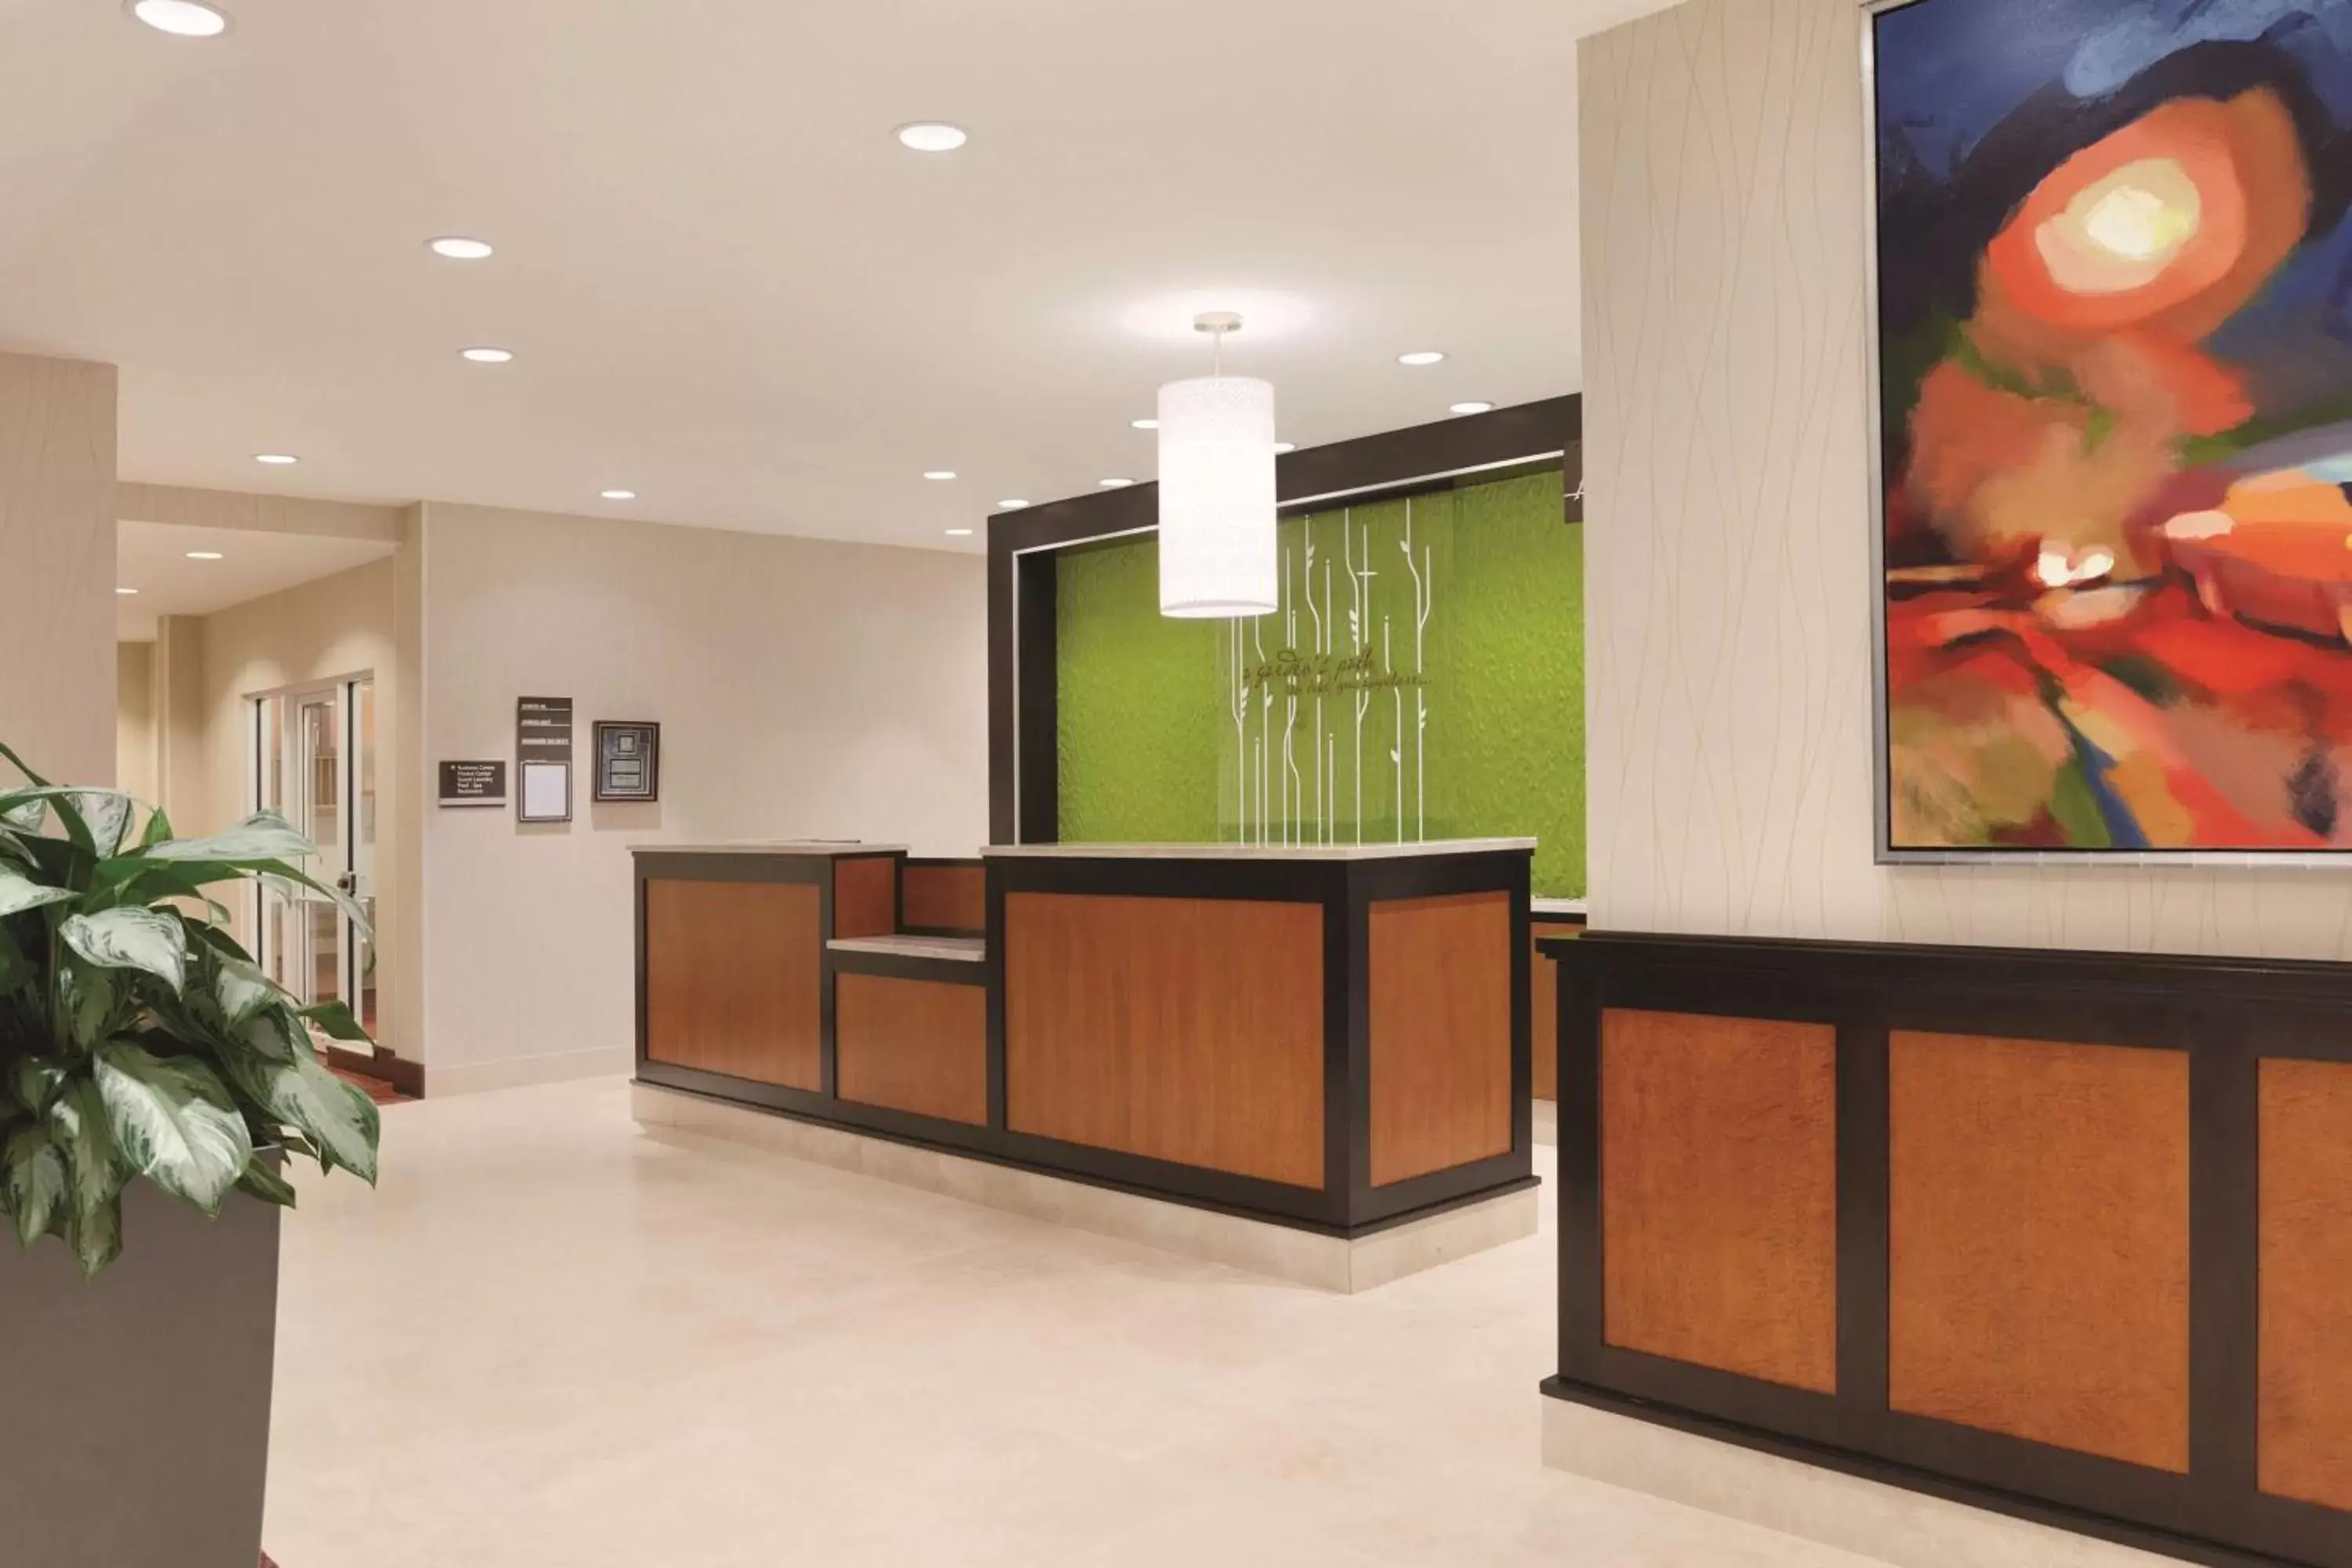 Lobby or reception, Lobby/Reception in Hilton Garden Inn Falls Church